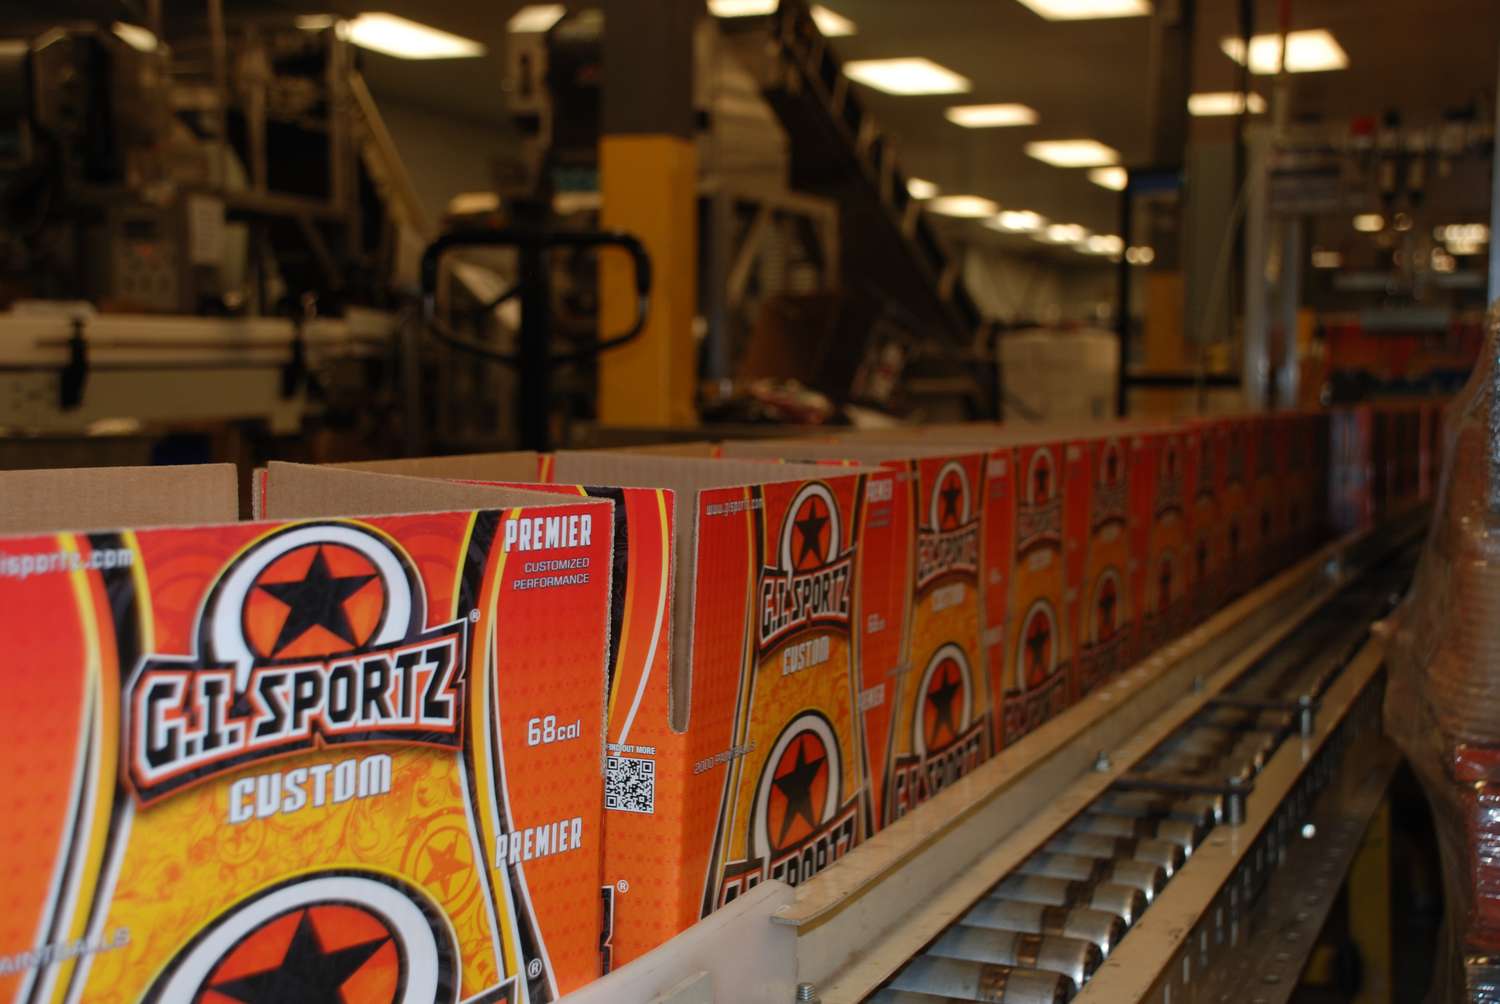 Usine G.I. Sportz Montreal HQ - Machine à fabriquer des balles de peinture - Remplissage de boîtes